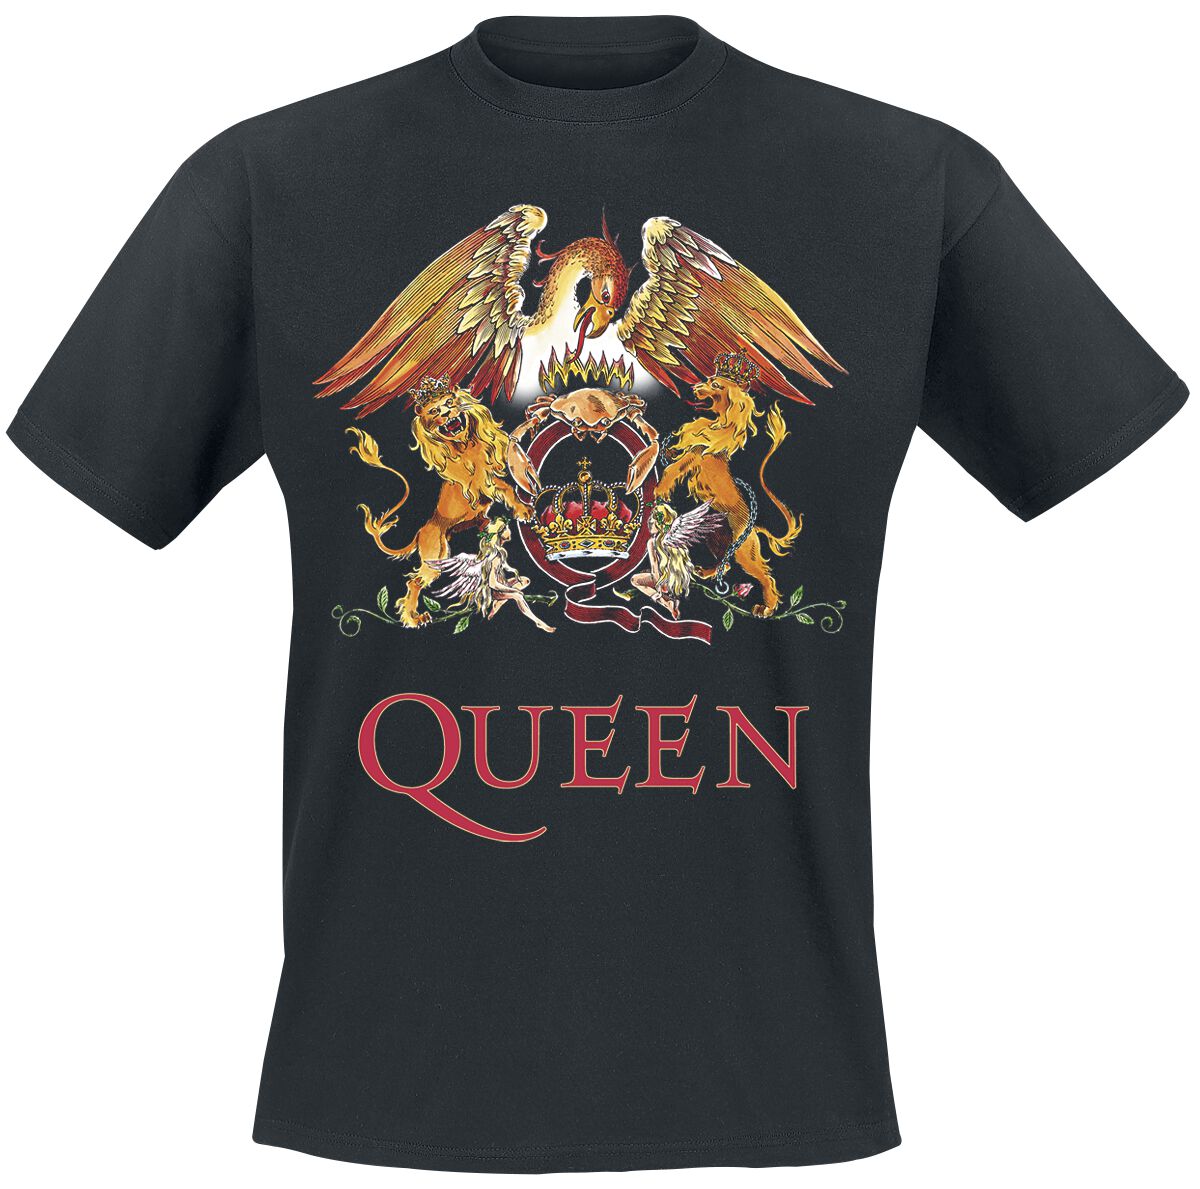 Queen T-Shirt - Crest Vintage - S bis 5XL - für Männer - Größe L - schwarz  - Lizenziertes Merchandise!